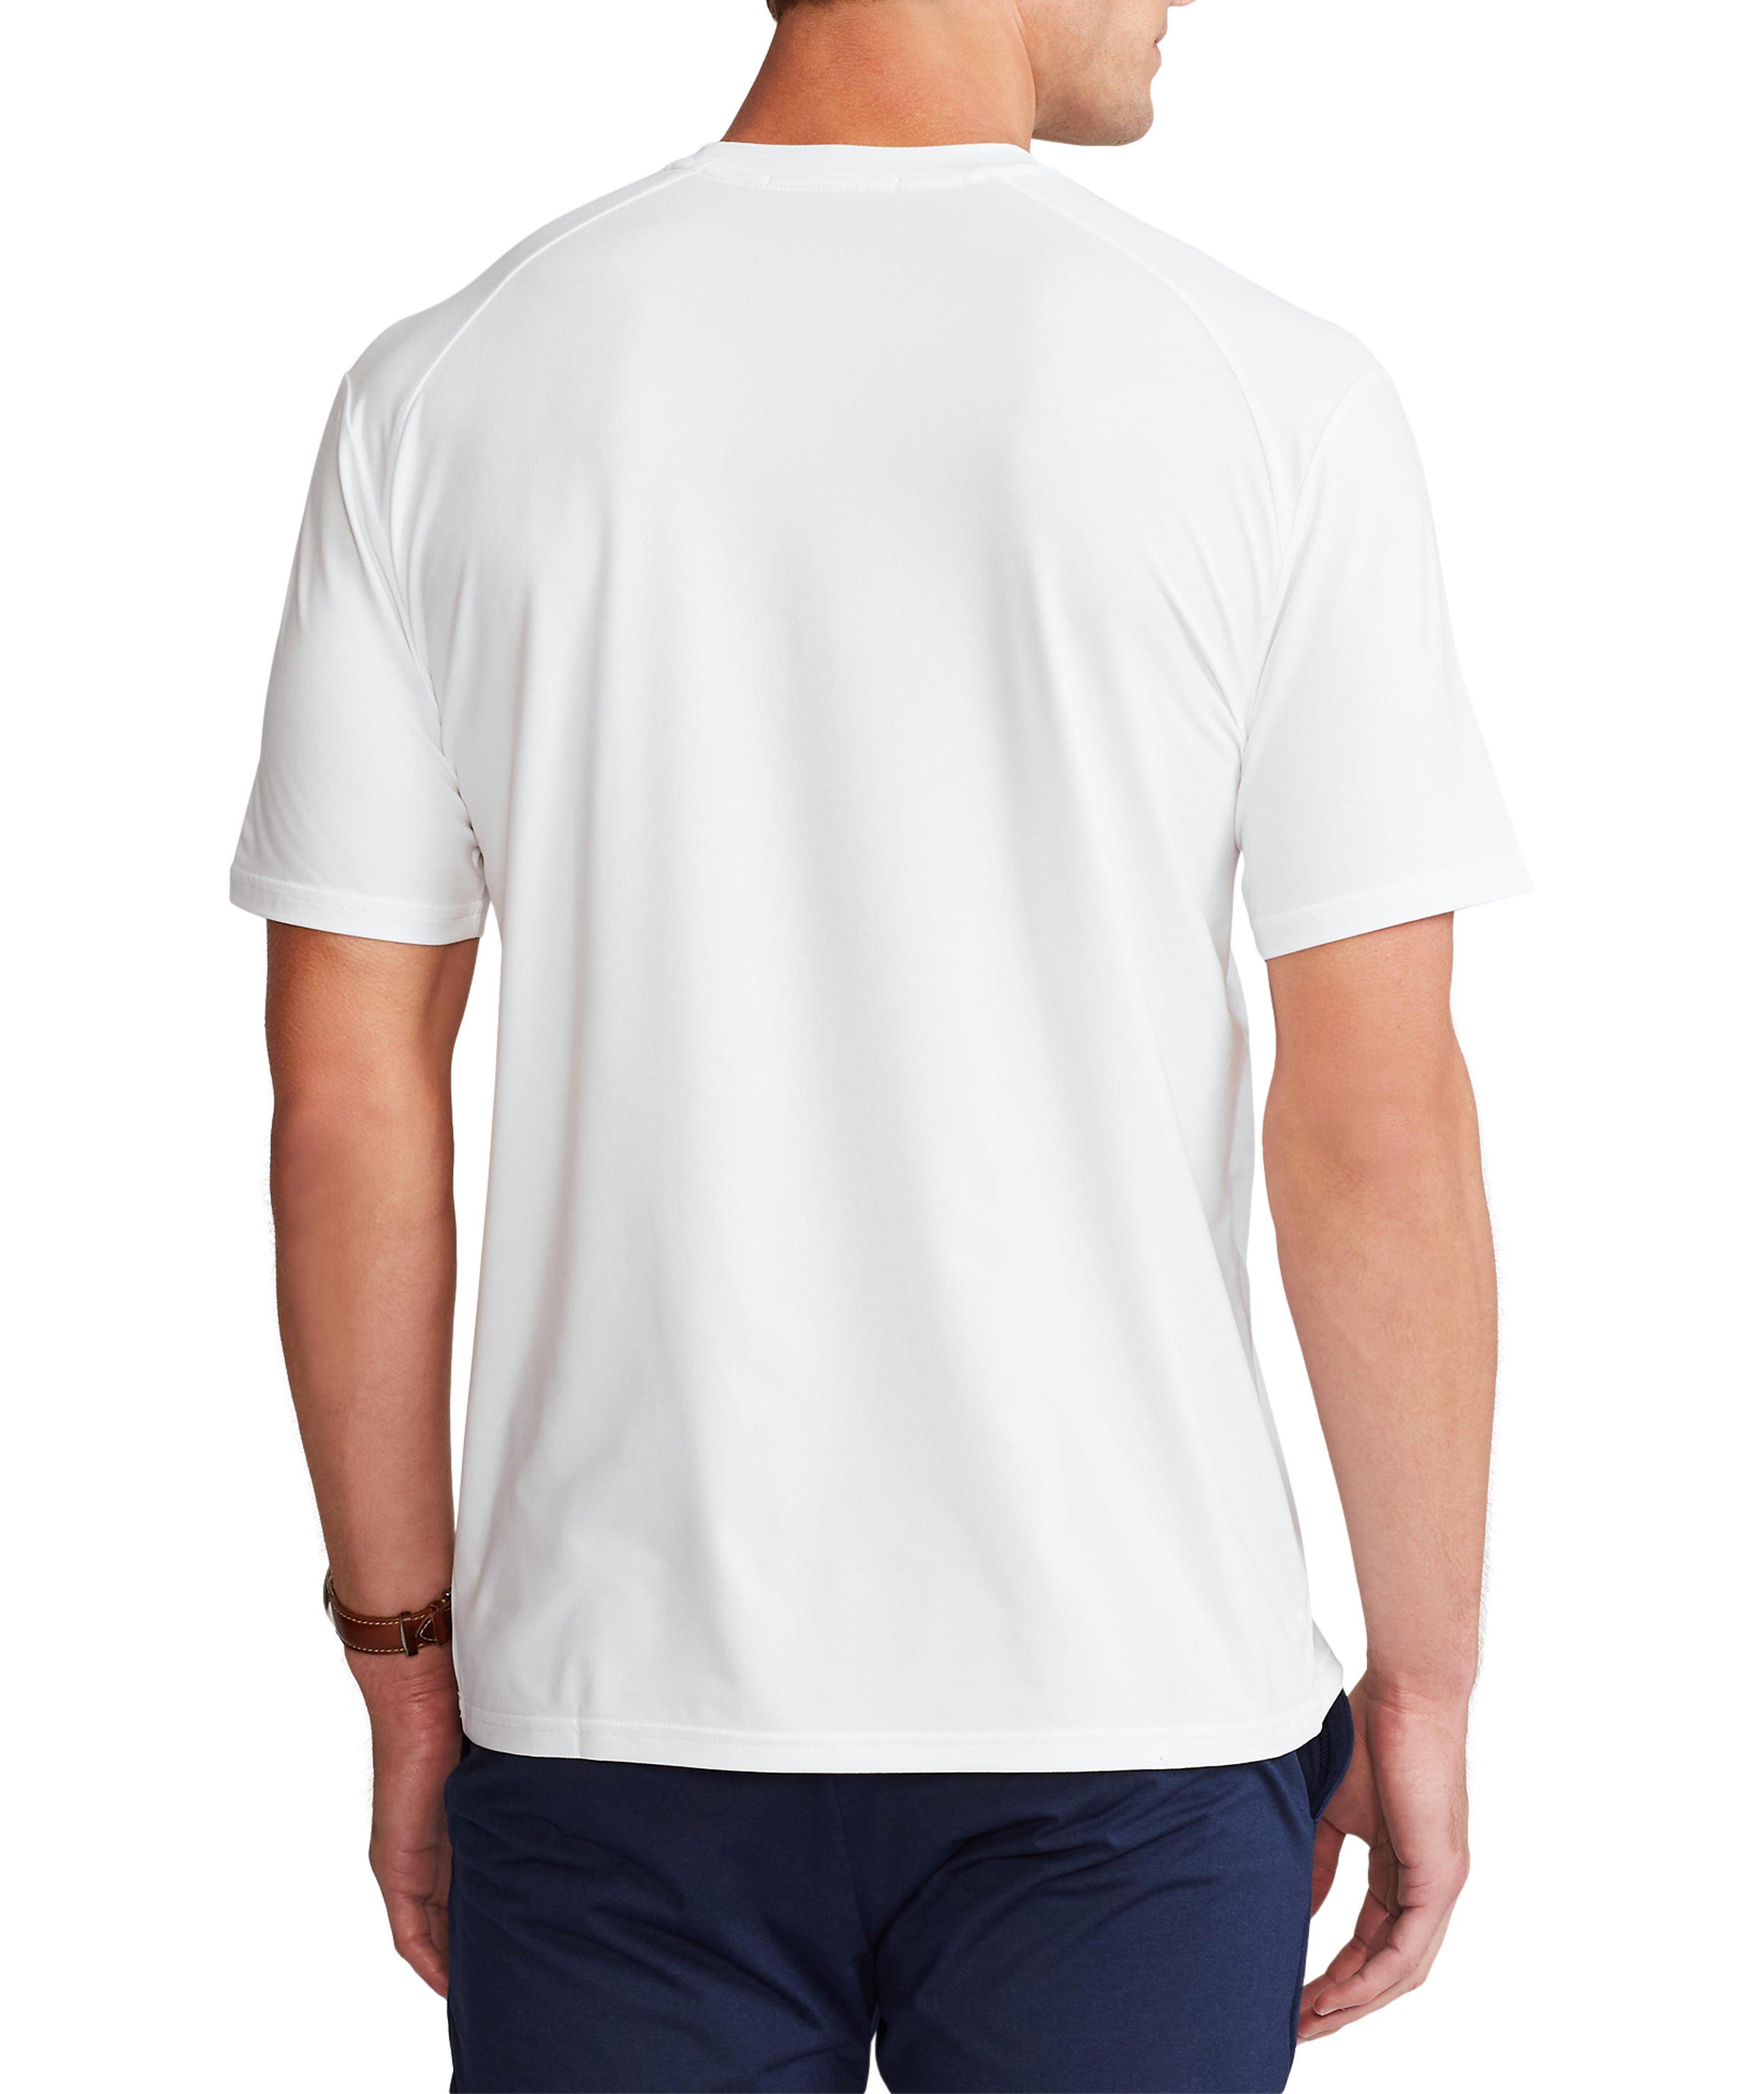 T-shirt en tissu technique, collection RLX image 2